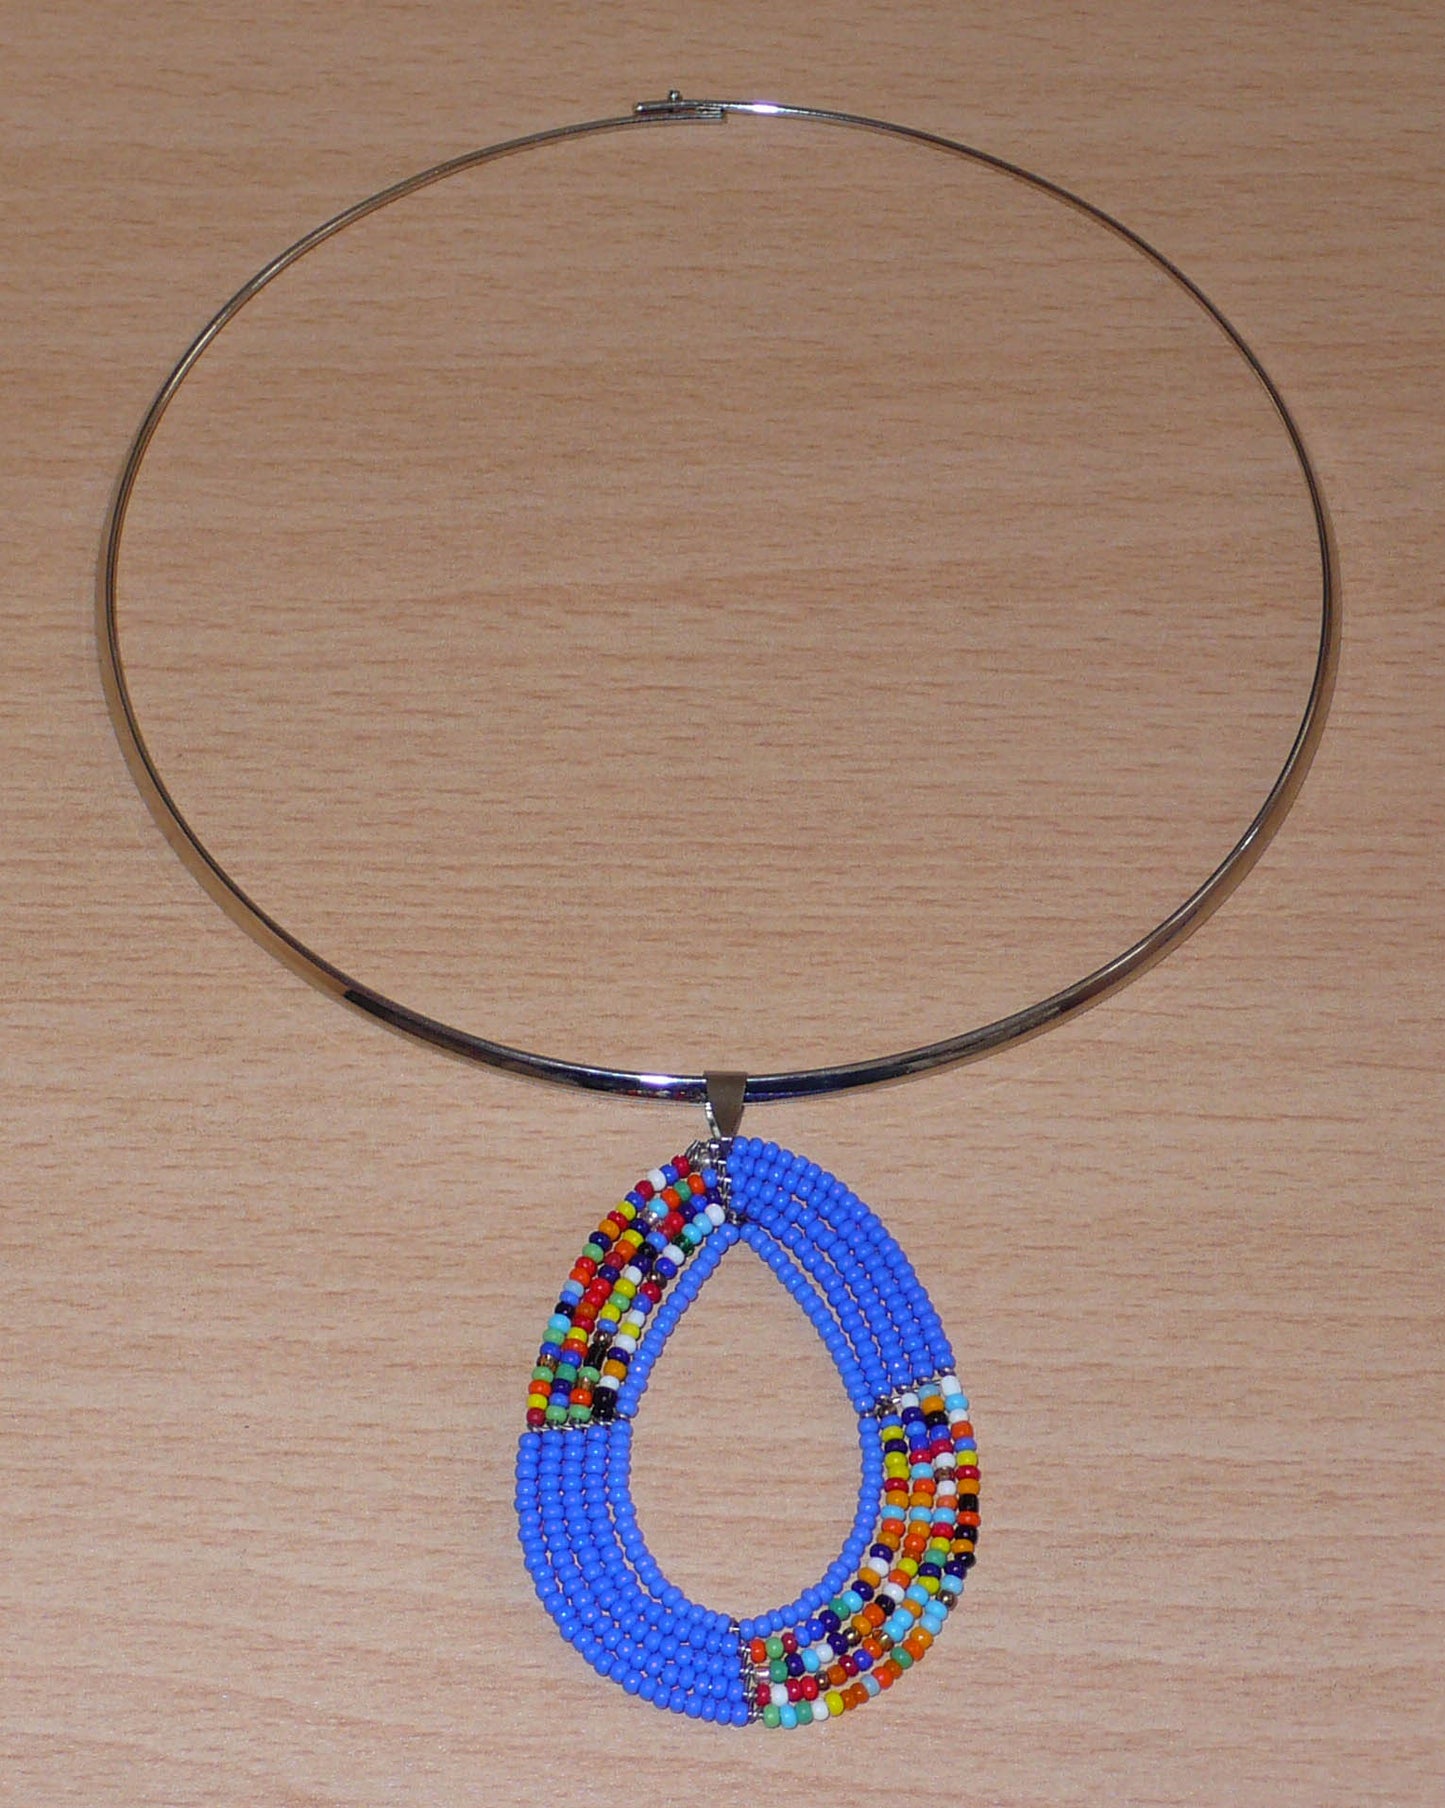 Collier bleu composé d'un ras-de-cou en laiton argenté orné d'un pendentif fait de perles de rocaille bleues et multicolores enfilées sur cinq rangs de fils de fer montés en forme de goutte. Ce collier mesure 19,5 cm de long (de la nuque au bas du pendentif), la cironférence du ras-de-cou est de 42,5 cm et 13,5 cm de diamètre ; le pendentif mesure 6 cm de long et 4,5 cm de large. Timeless Fineries